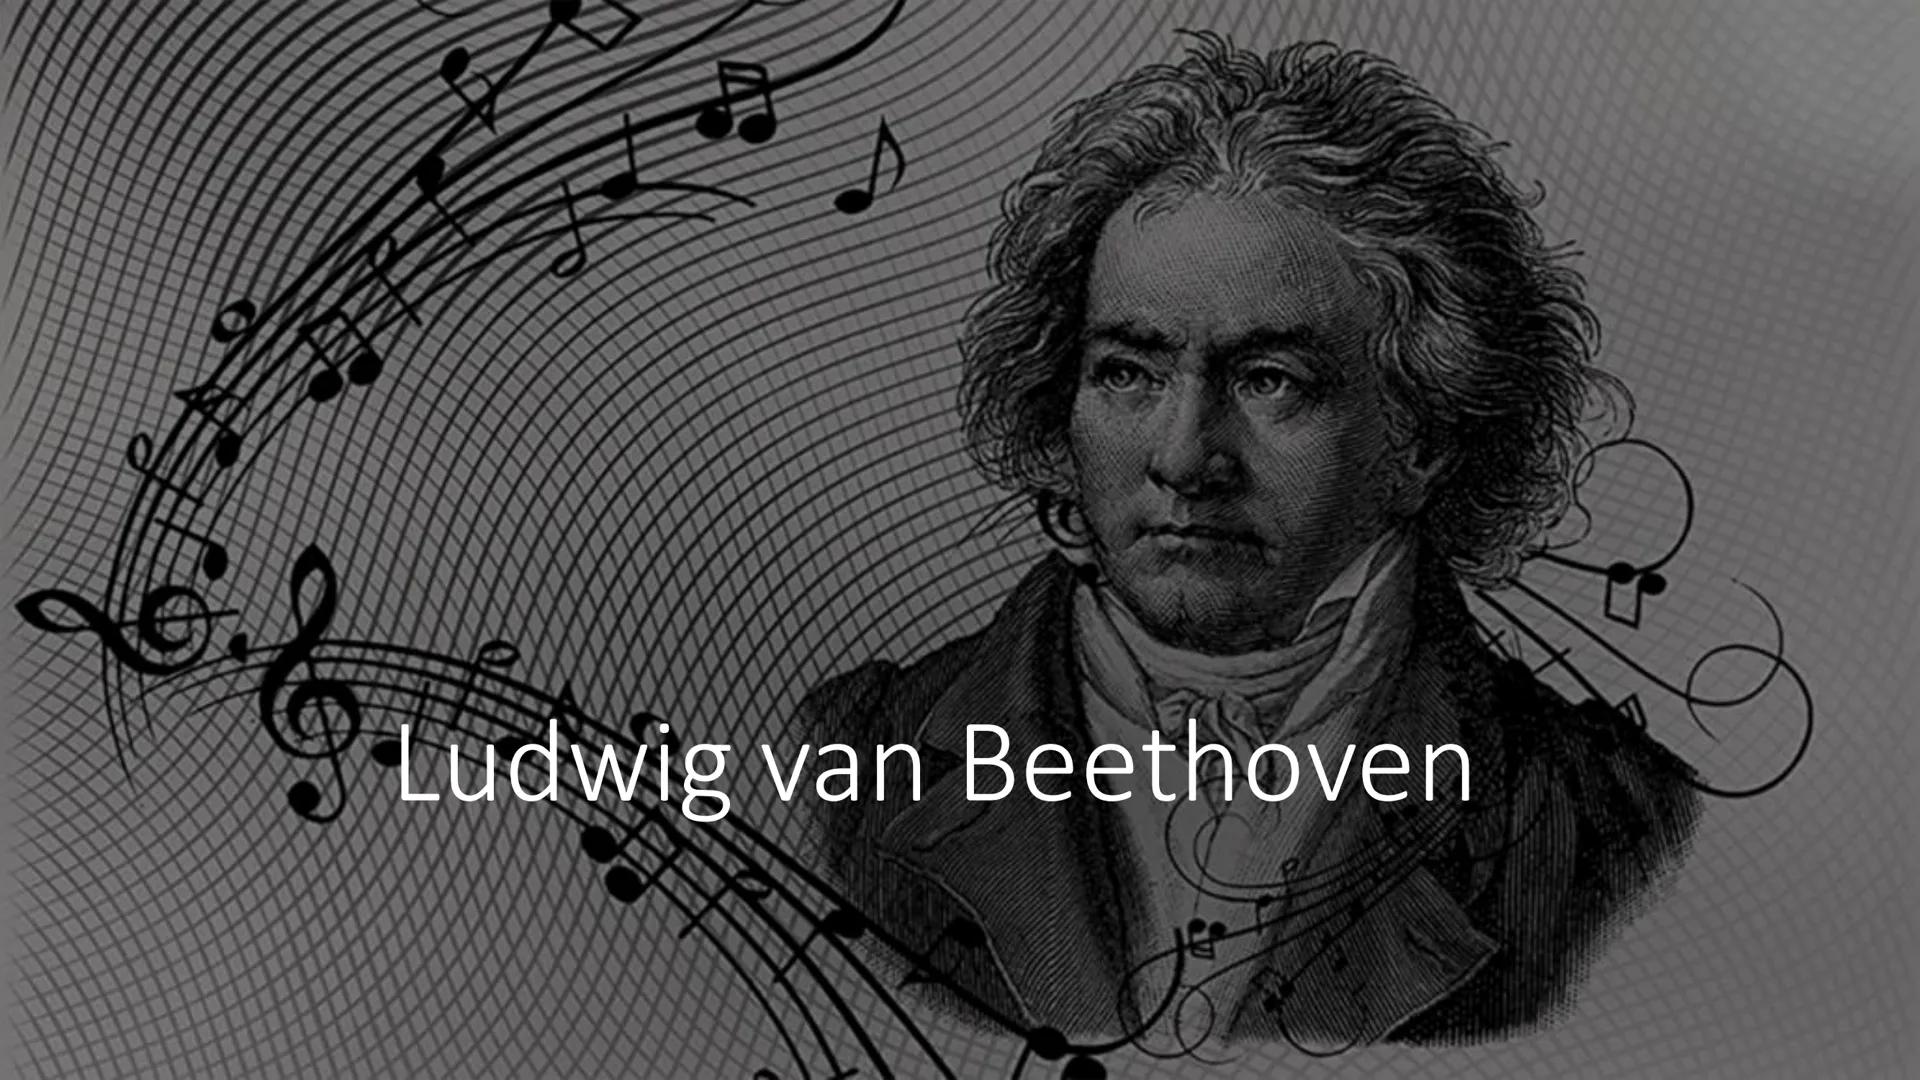 Ludwig van Beethoven ●
●
●
Allgemeine Fakten
Ausbildung
Wichtigste Werke
Krankheit
Bilder
Quellen
Inhalt: ●
●
Allgemeine Fakten:
Ludwig van 